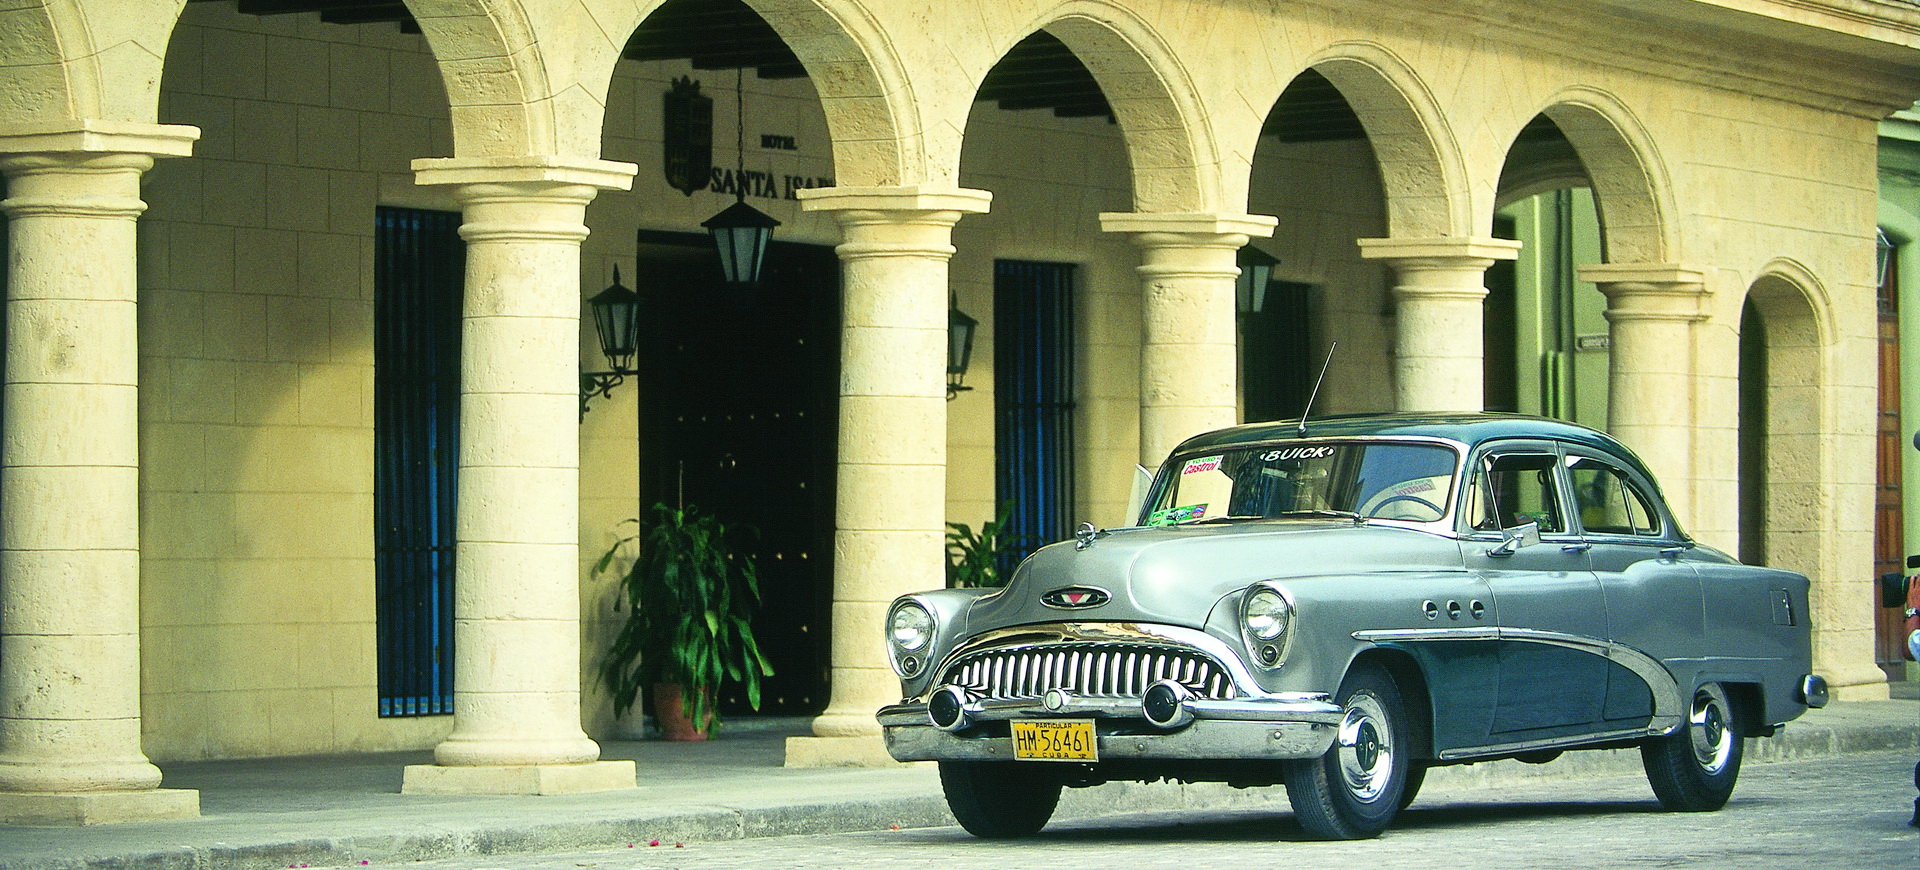 Formalités pour un voyage de tourisme en groupe à Cuba